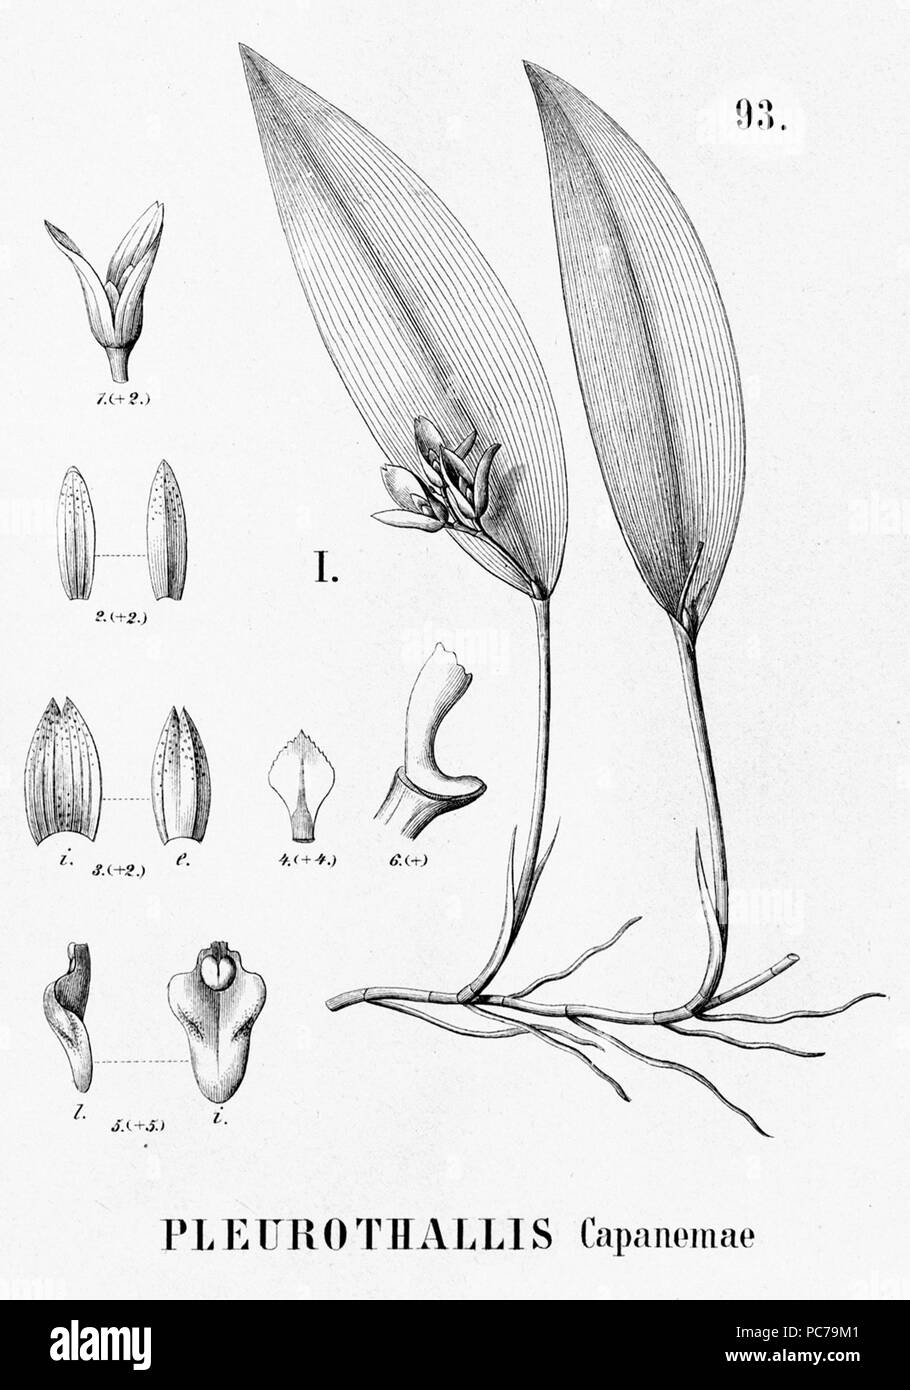 25 Acianthera capanemae (as Pleurothallis capanemae) - cutout from Flora Brasiliensis 3-4-93 fig I Stock Photo